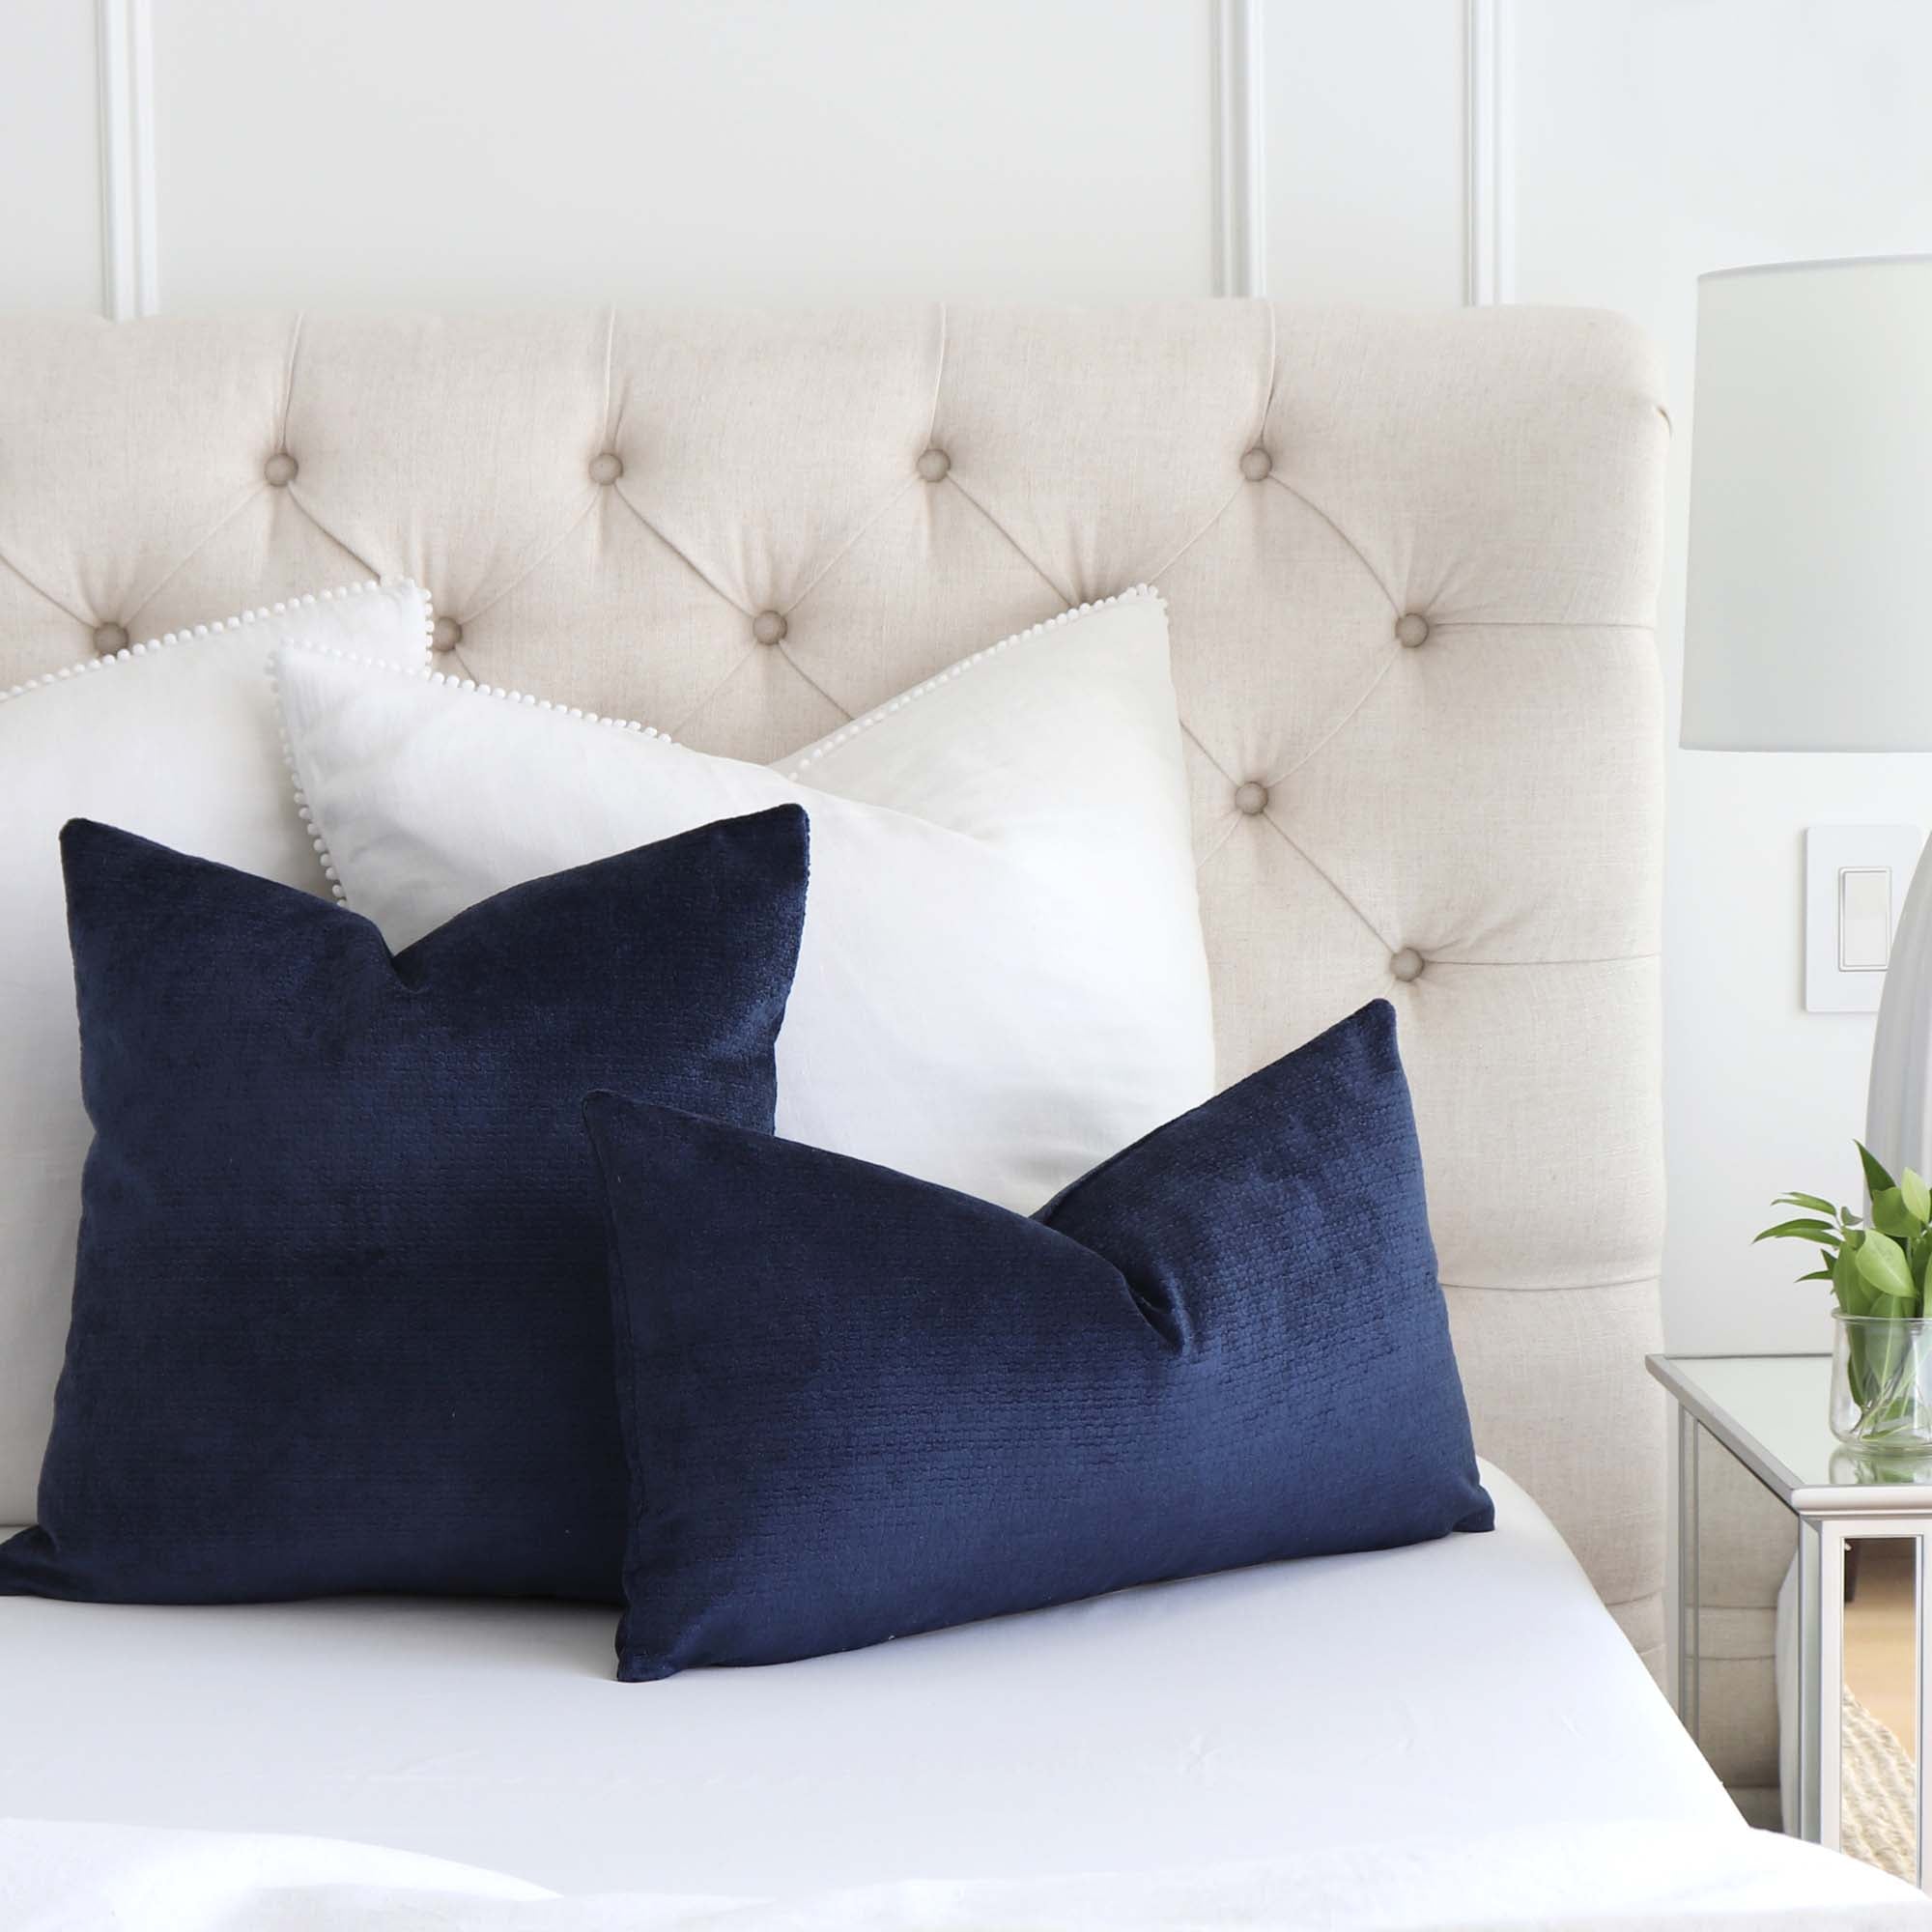 Kelly Wearstler Rebus Aegean Indigo Blue Textured Velvet Pillow Cover on Tufted Bed